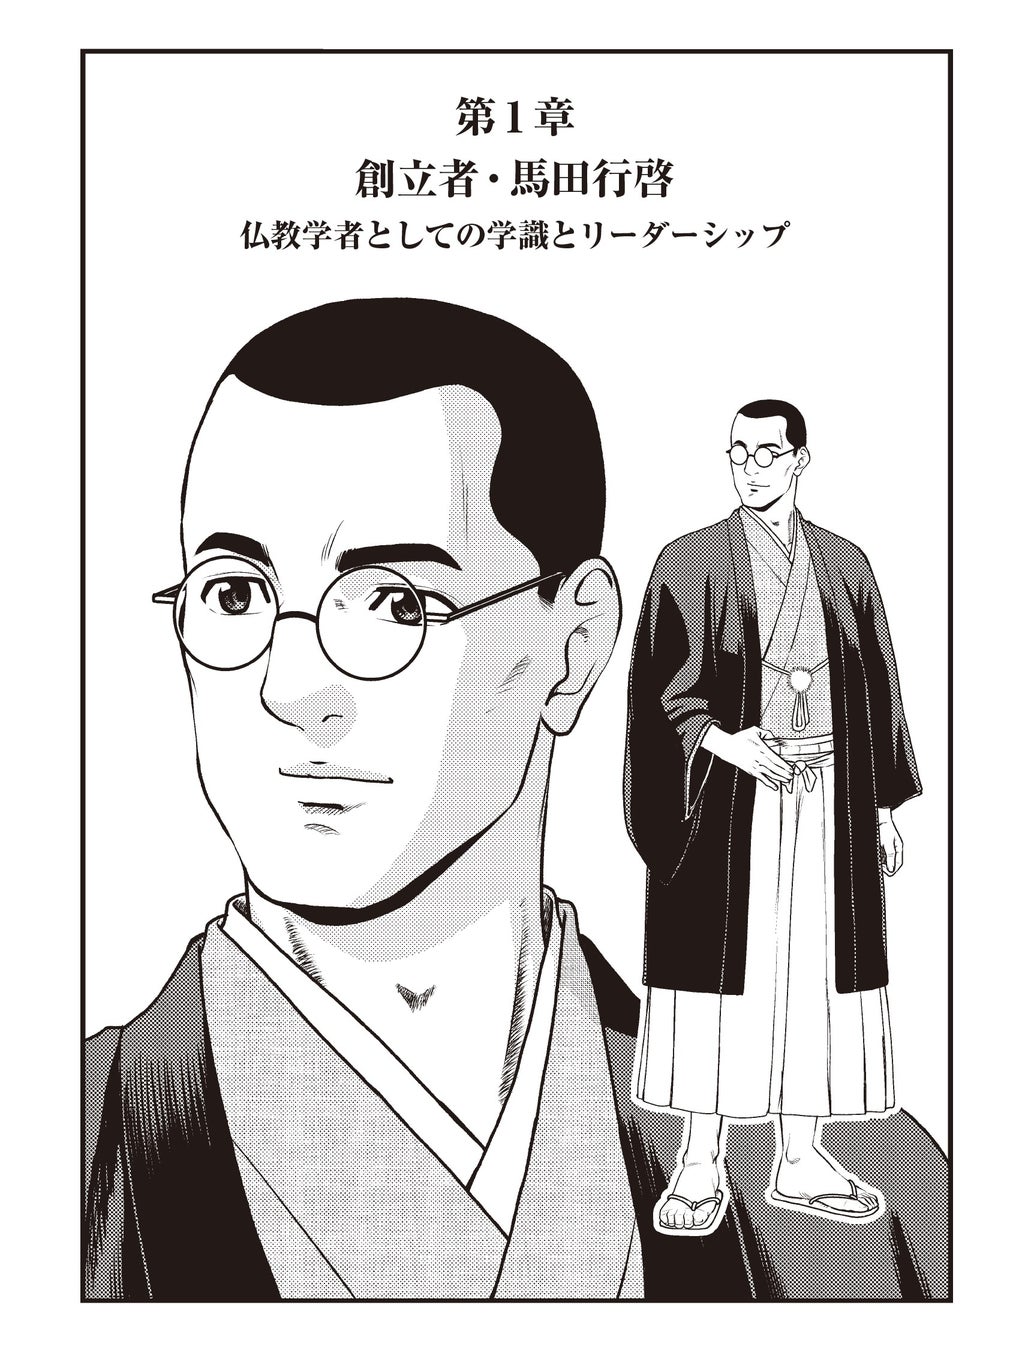 学校法人文教大学学園が創立者・馬田行啓と小野光洋の生涯を漫画化した『馬田行啓と小野光洋』を制作しました